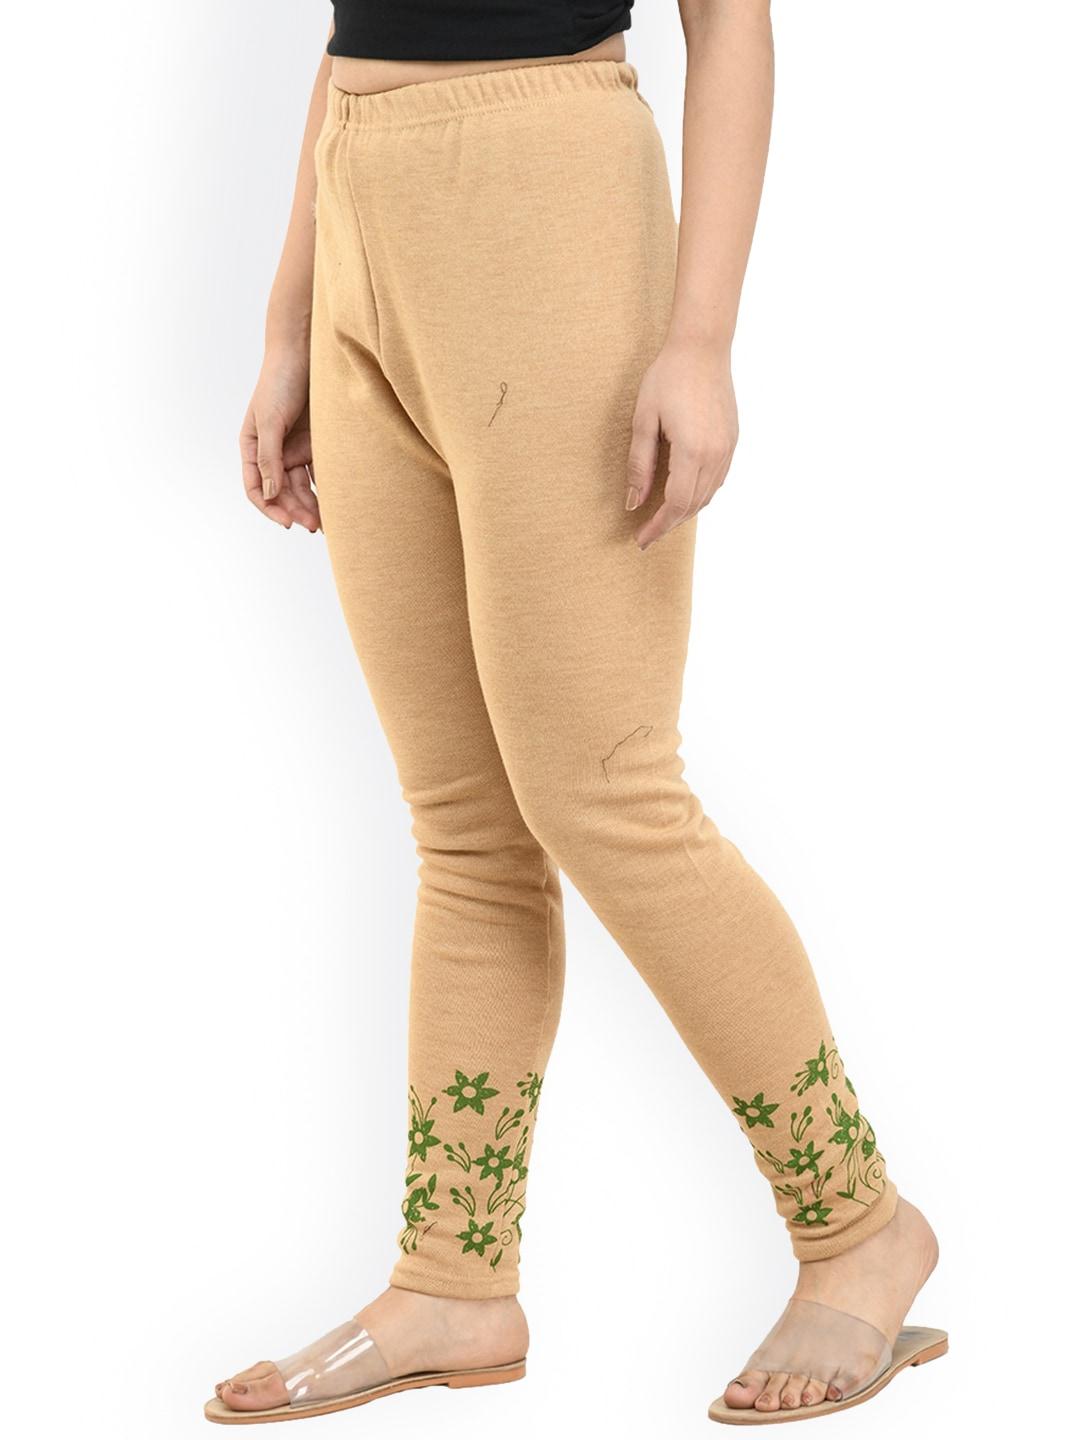 indiweaves-floral-printed-wool-ankle-length-leggings